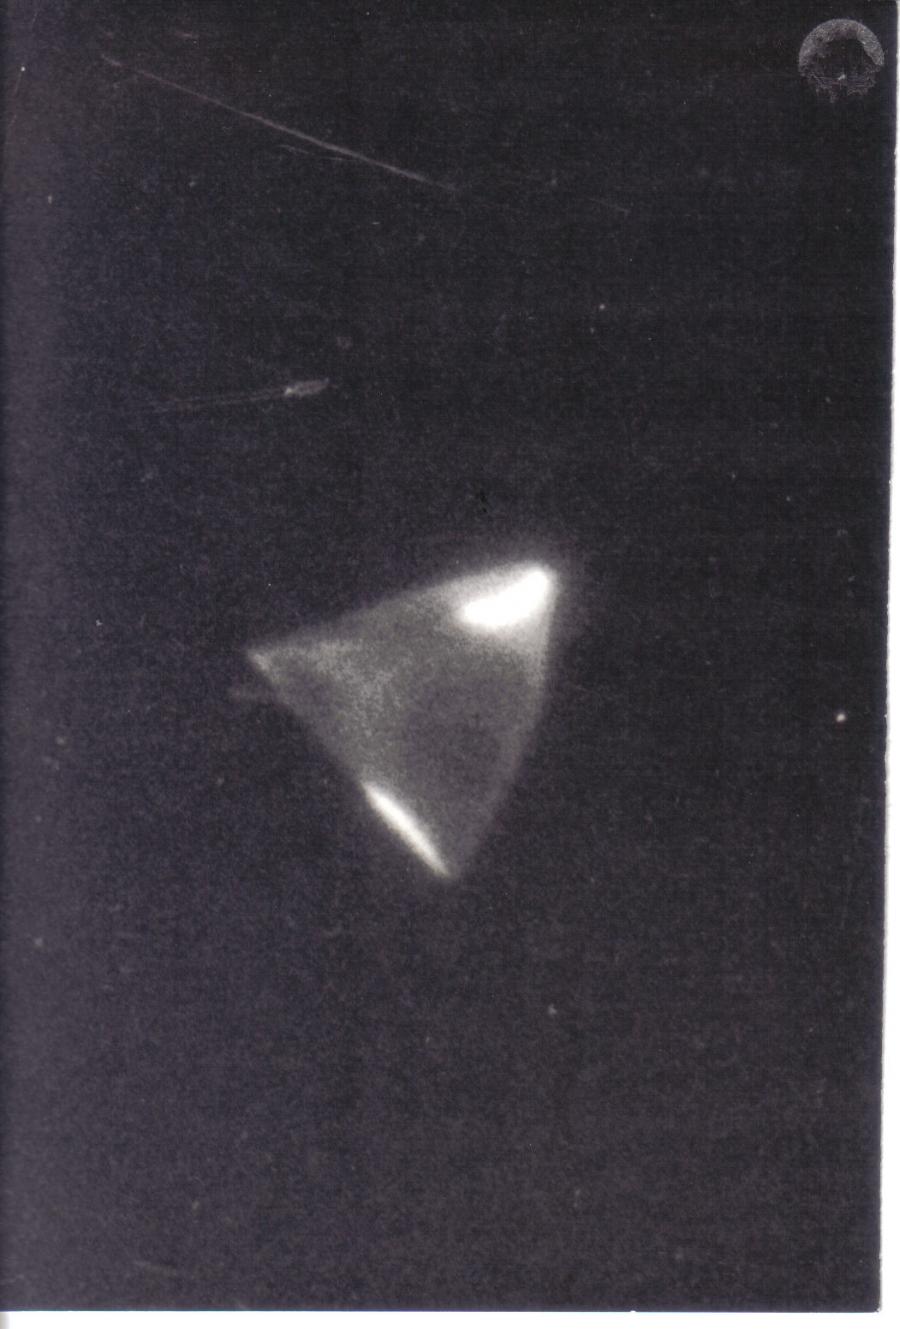 С 19:30 5 сентября 1968 года жители Мадрида увидели летающий объект. Выяснилось, что этот объект представлял собой французский стратосферный воздушный шар CNES, который приземлился недалеко от города Эльче (Аликанте) пять дней спустя.

© Agence BELGA
